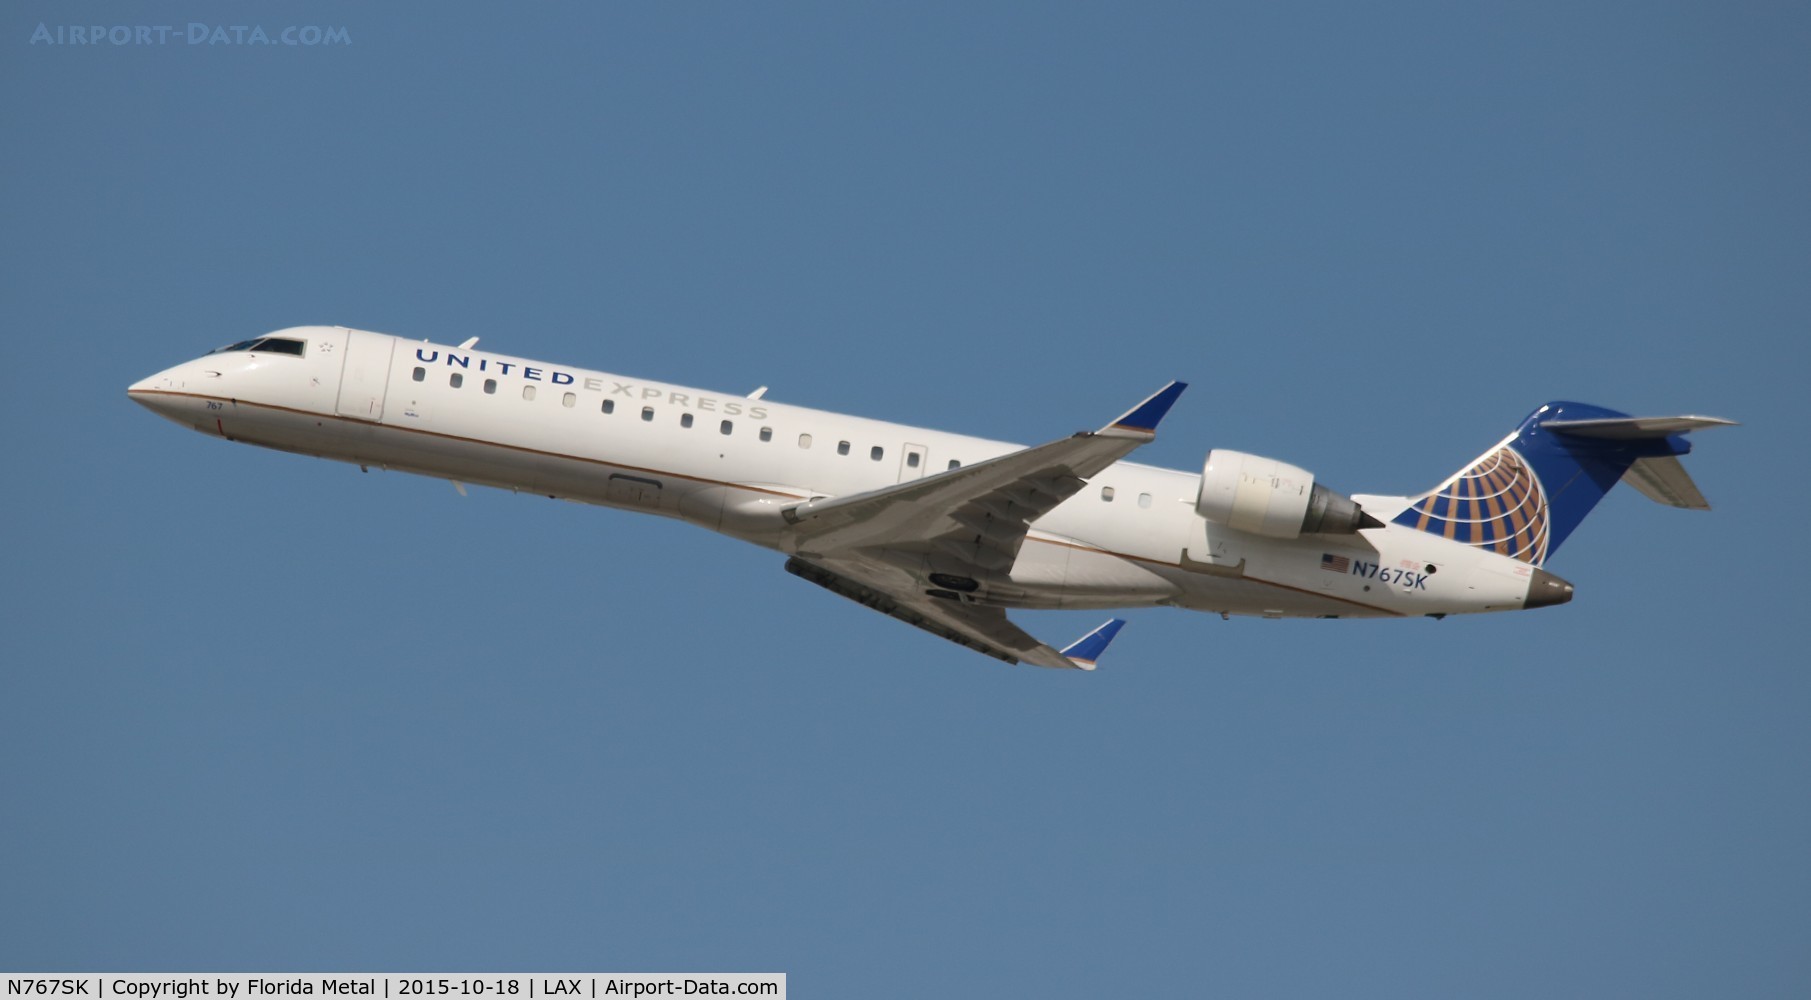 N767SK, 2005 Bombardier CRJ-702 (CL-600-2C10) Regional Jet C/N 10233, United Express